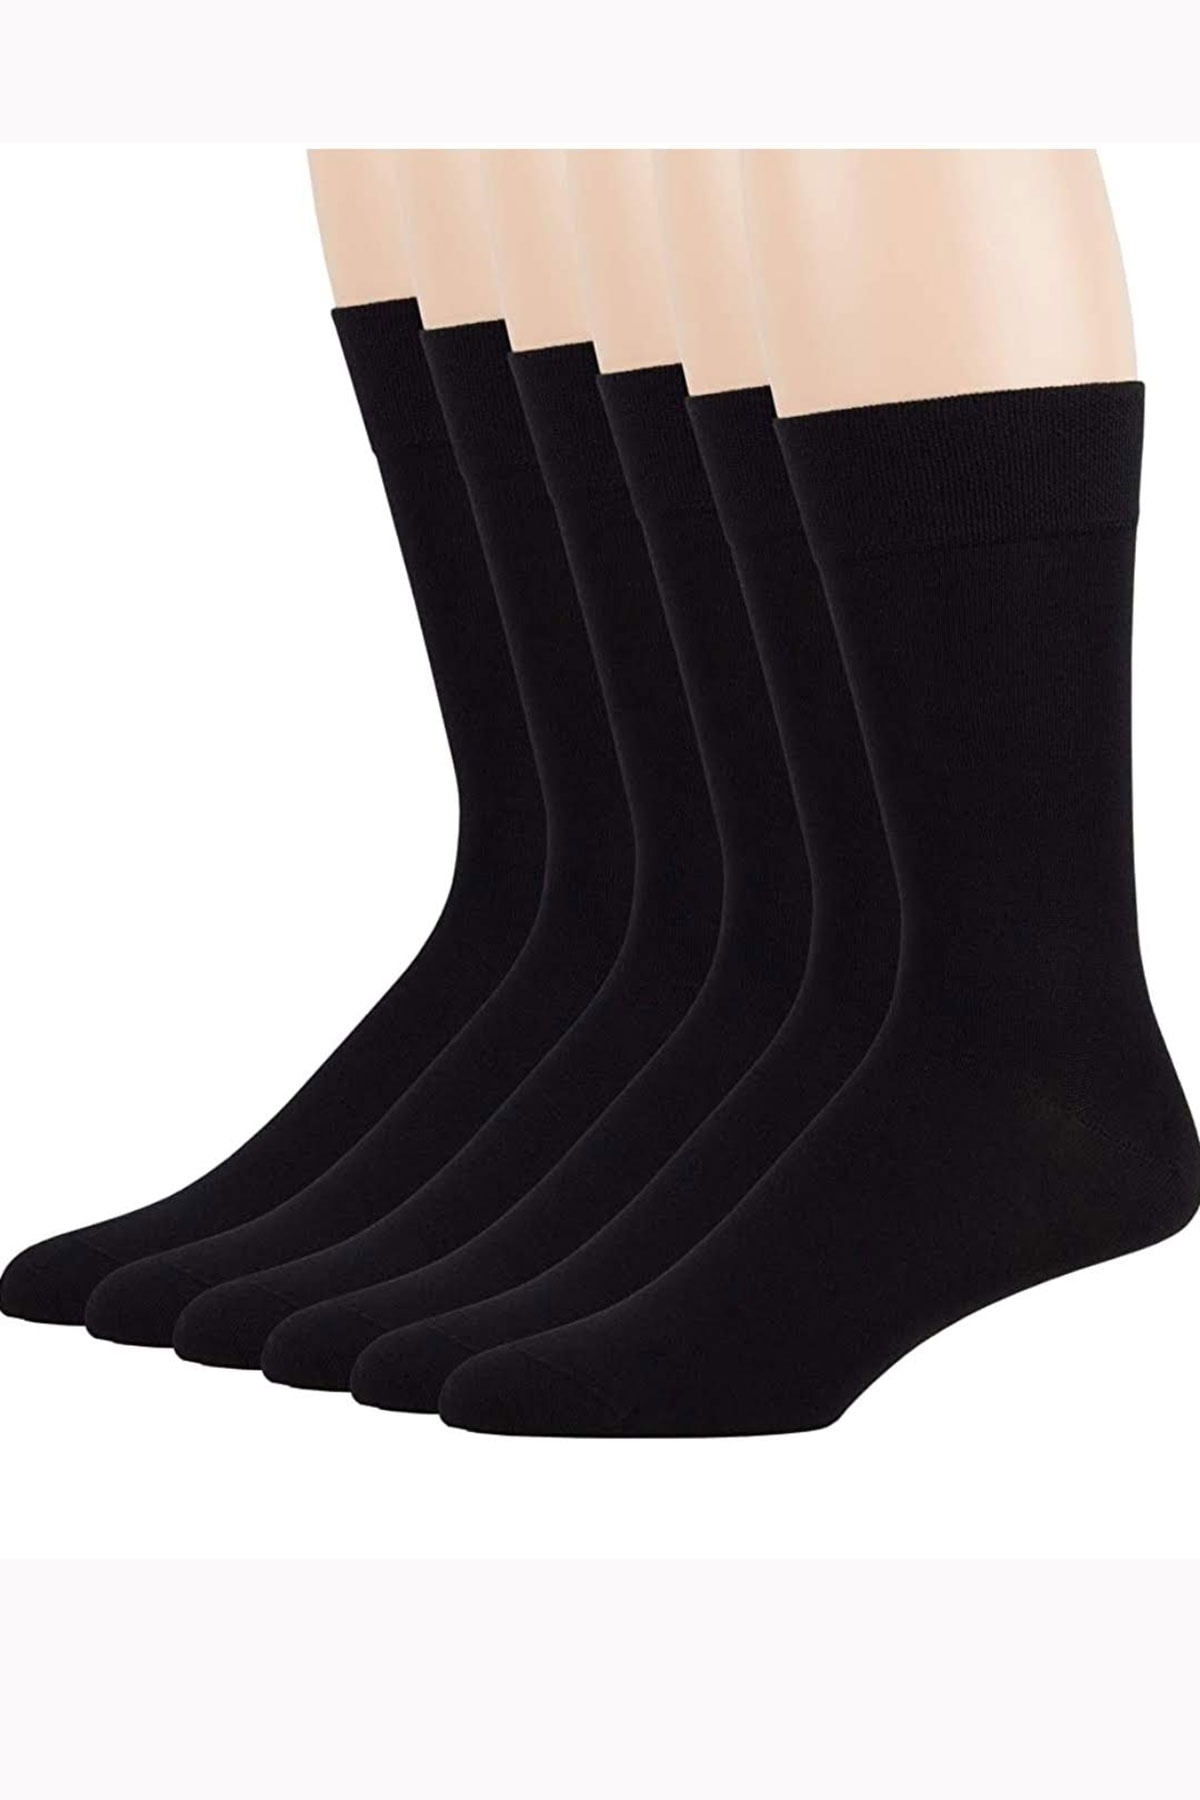 Gutiero Erkek 10 Çift Bambu Dikişsiz Uzun Siyah Çorap